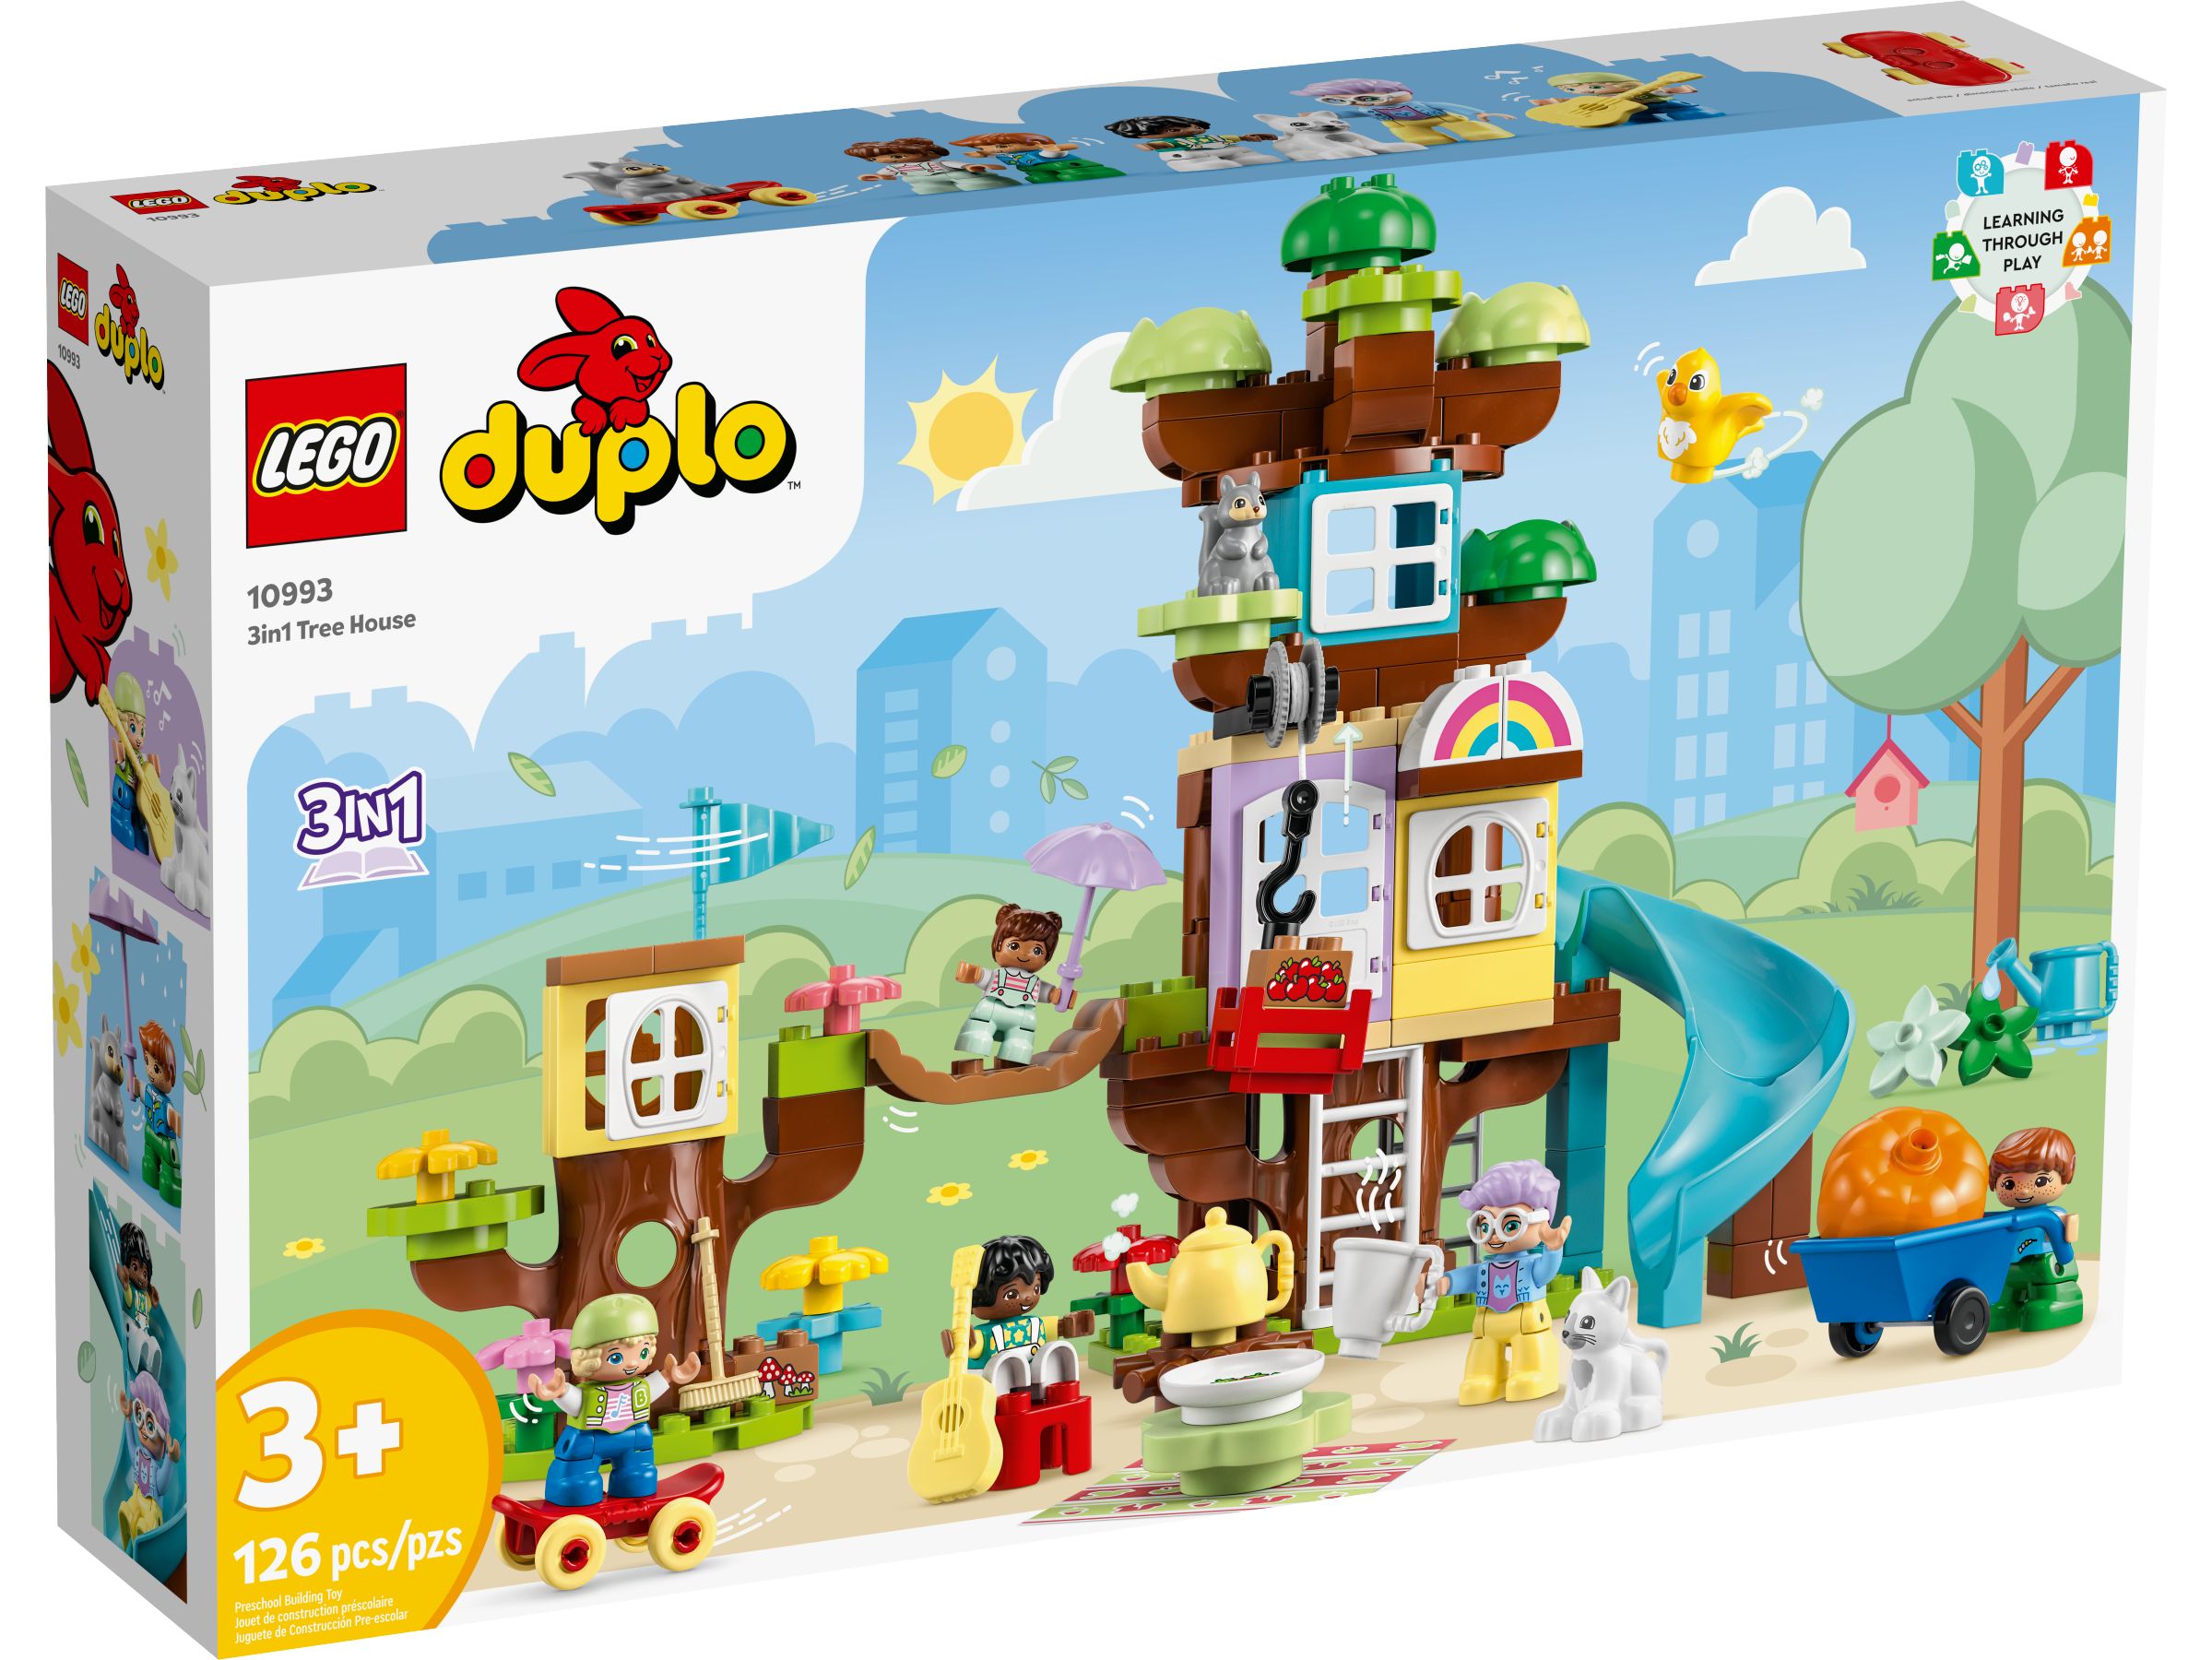 LEGO Duplo 10993 3-in-1-Baumhaus LEGO_10993_Box1_v39.jpg